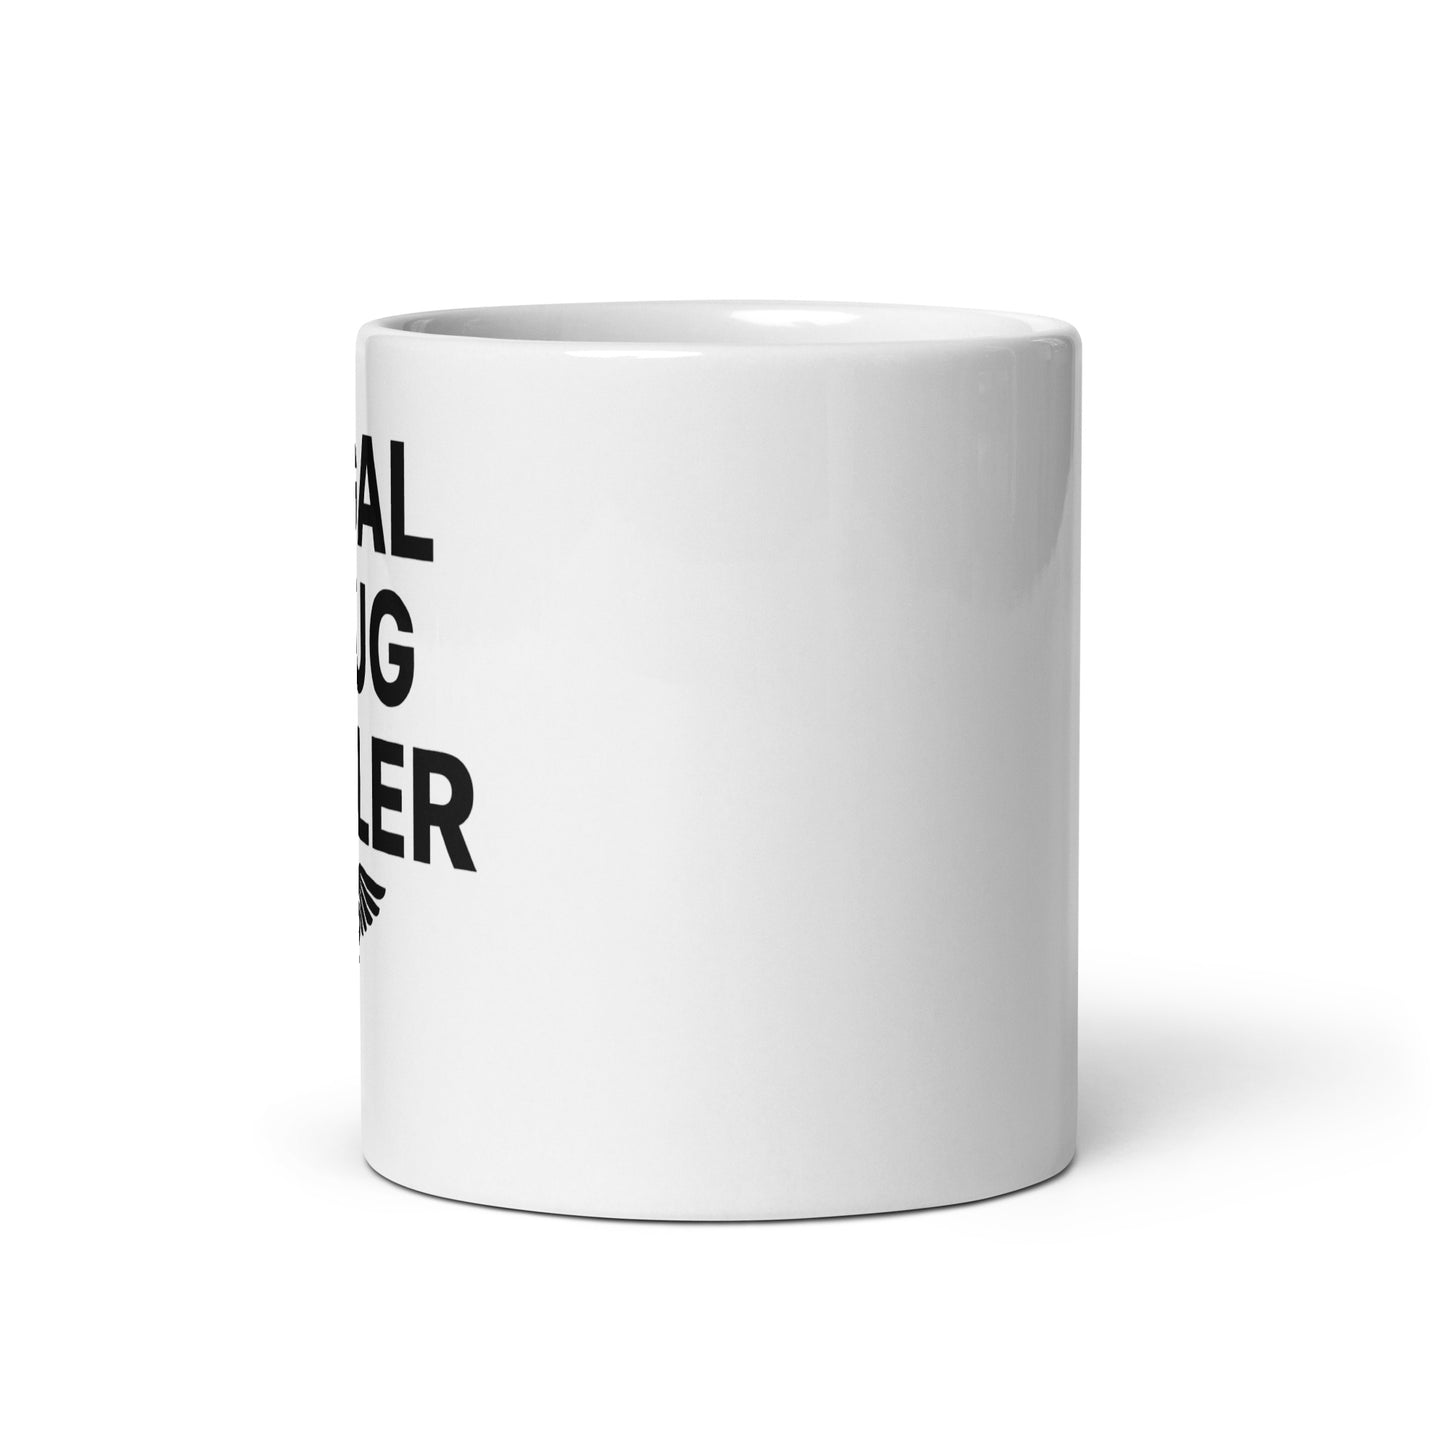 Legal Drug Dealer (Pharmacist) mug